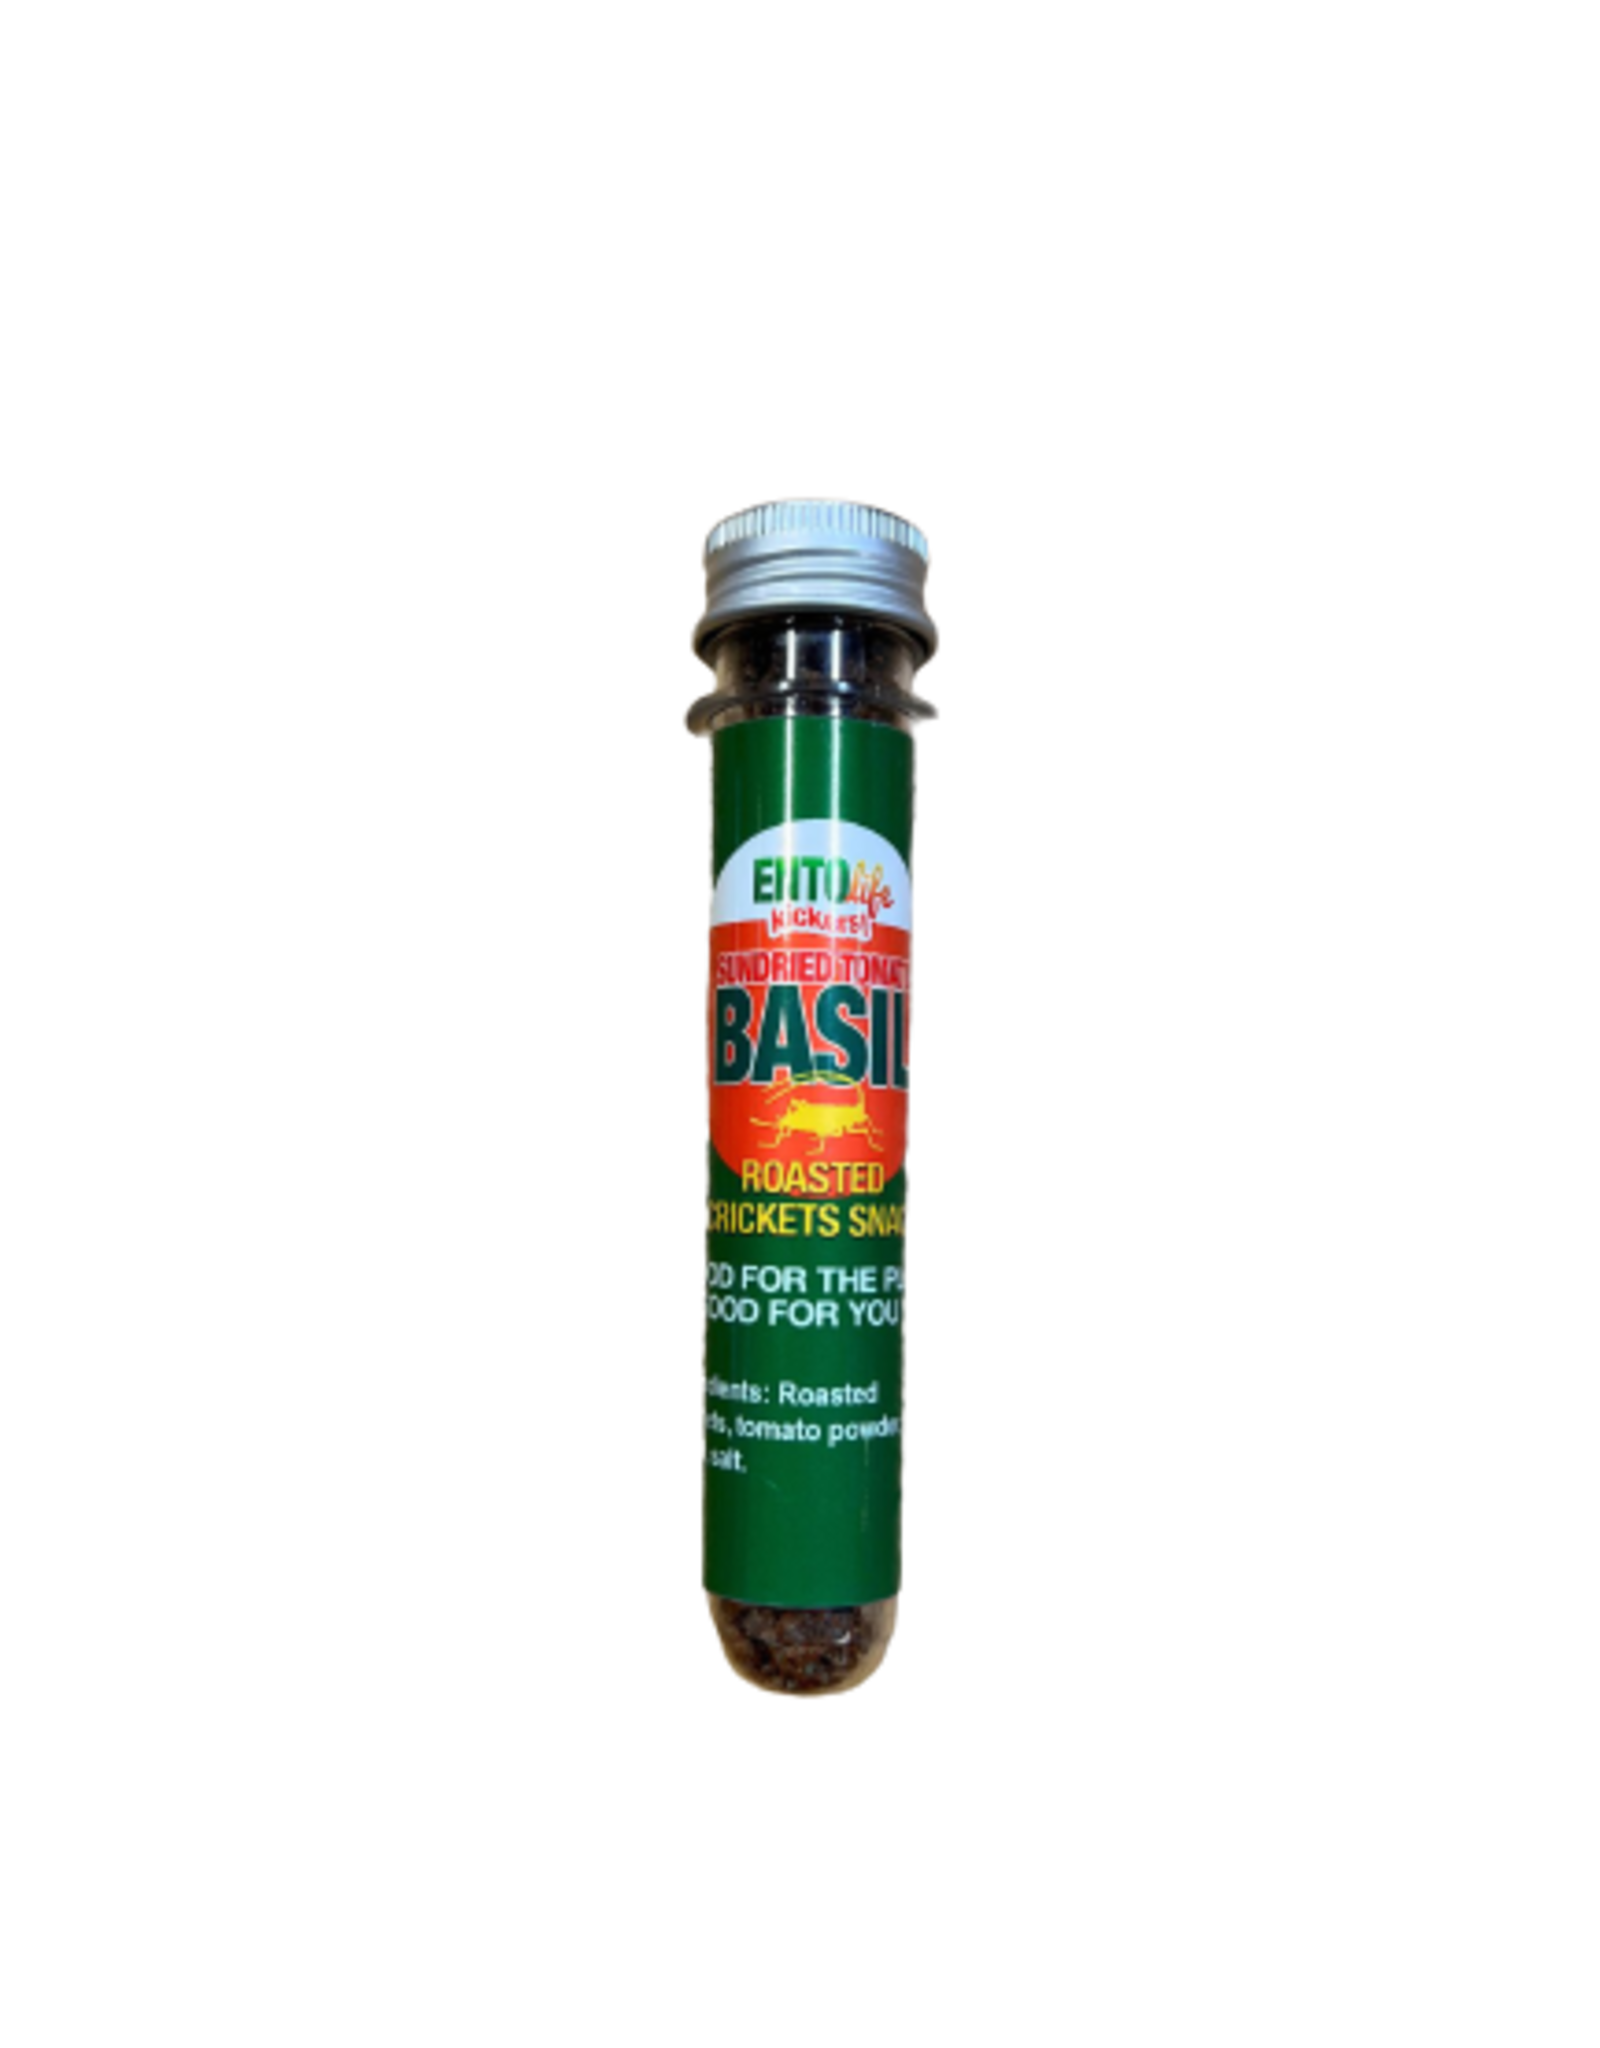 Mini-Kickers Crickets Tomato Basil